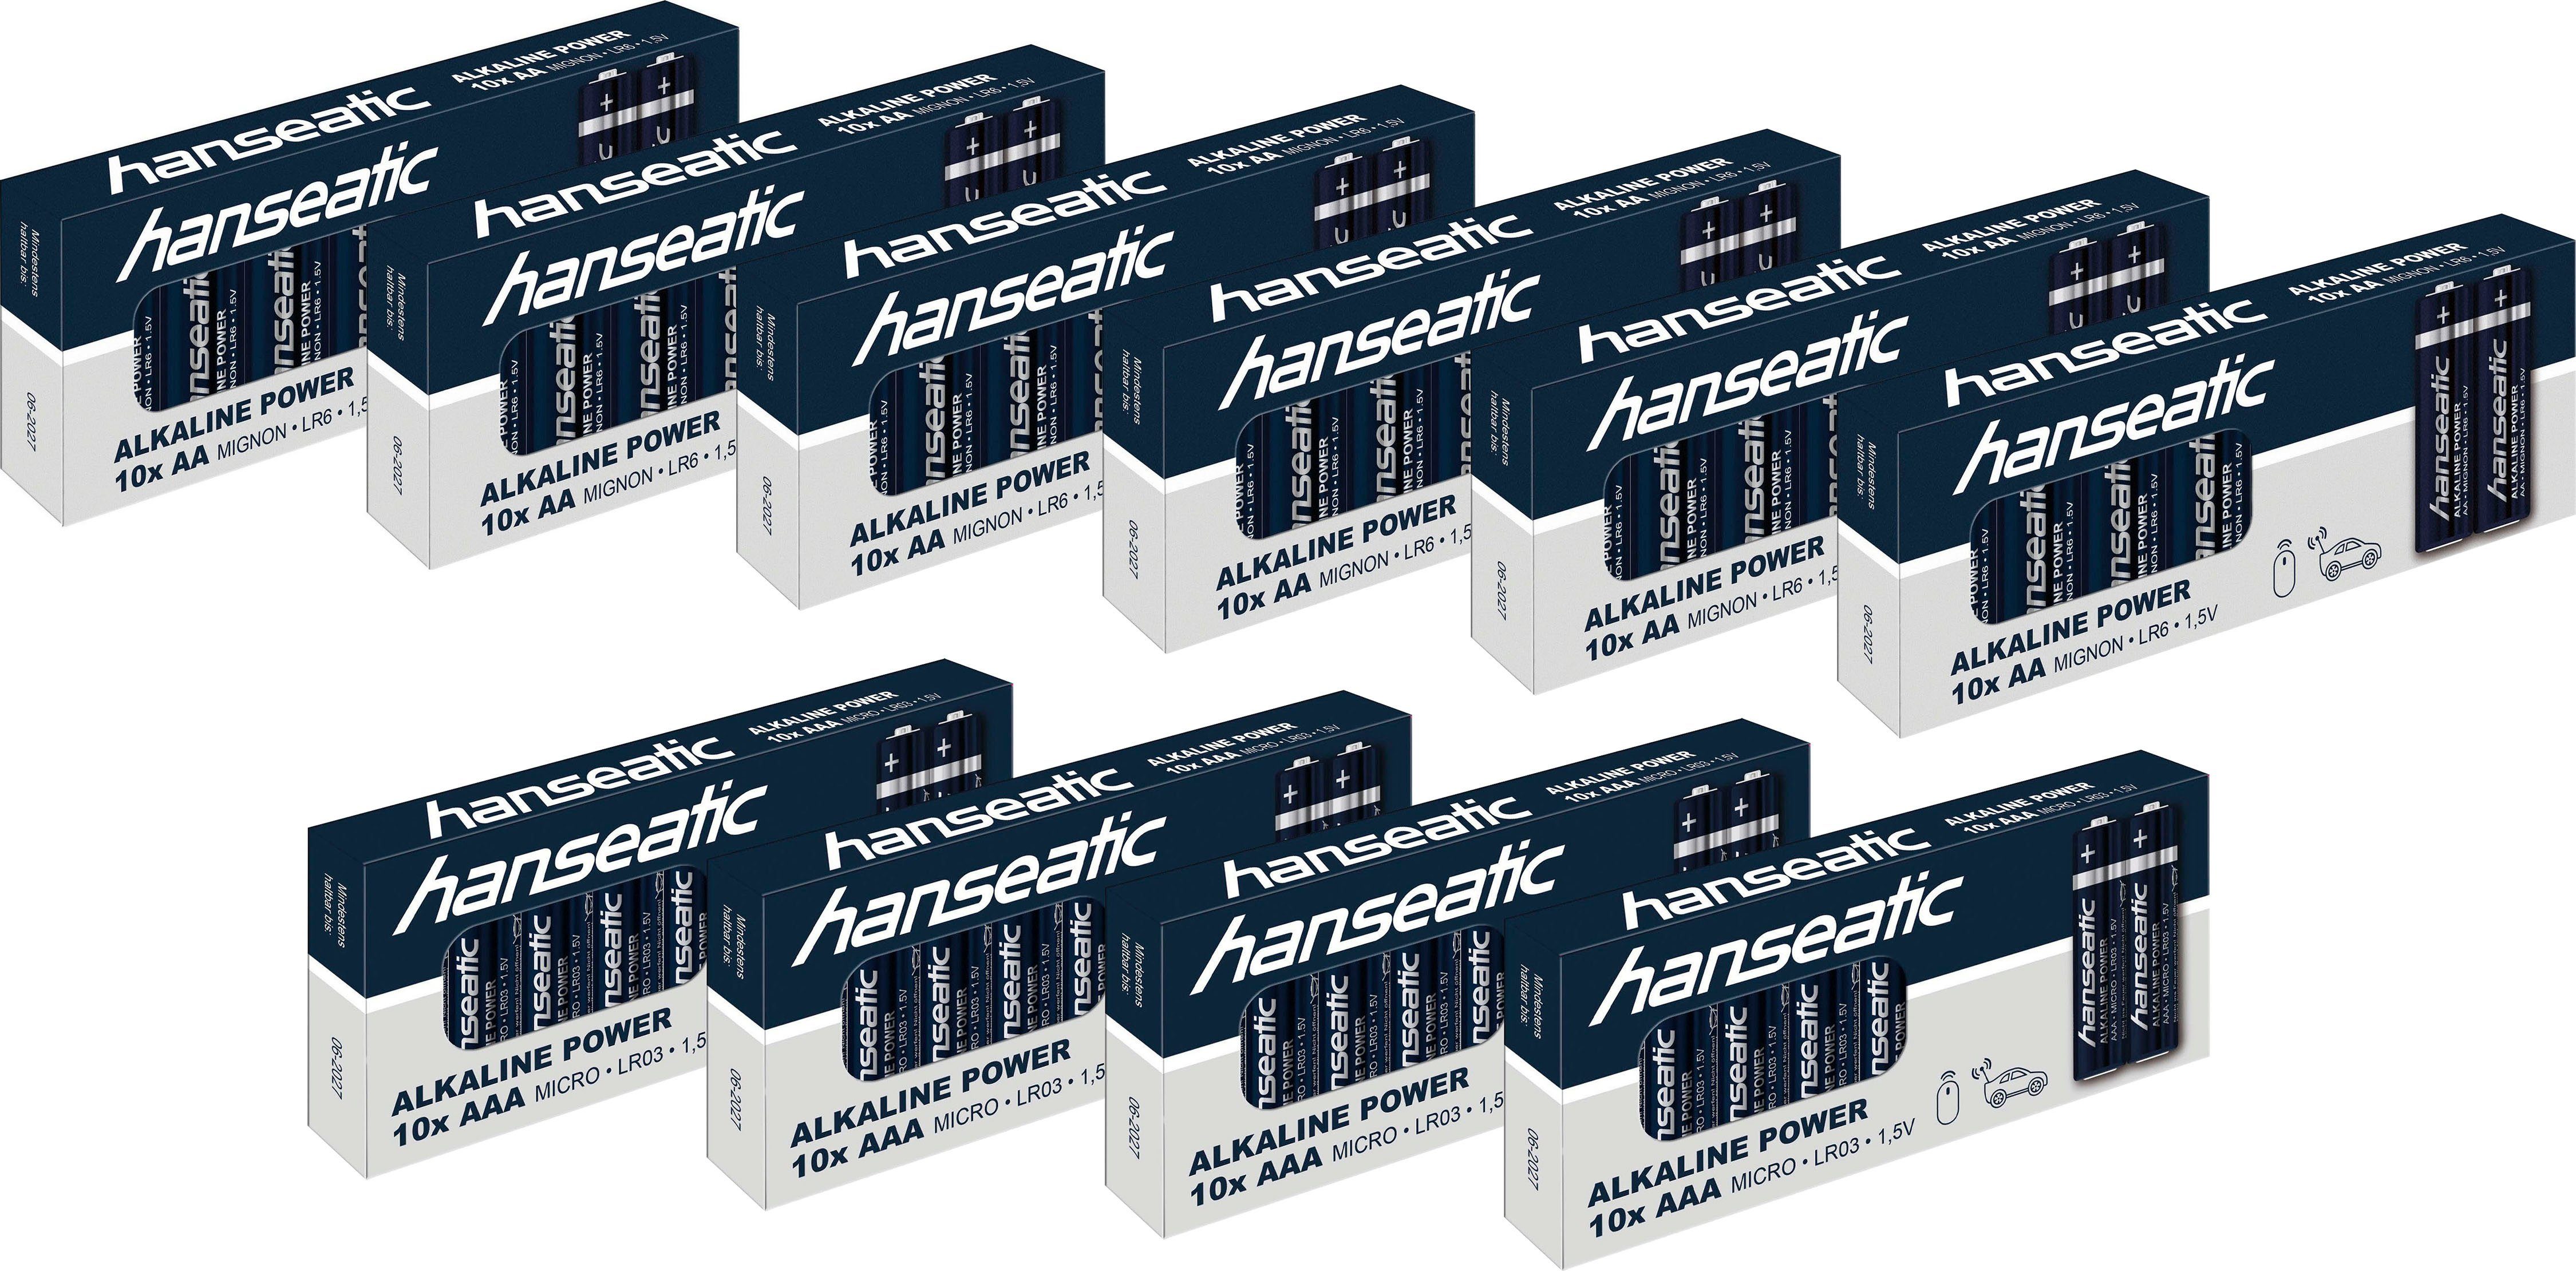 Hanseatic Batterie Set 60 + 40 Stück Batterie